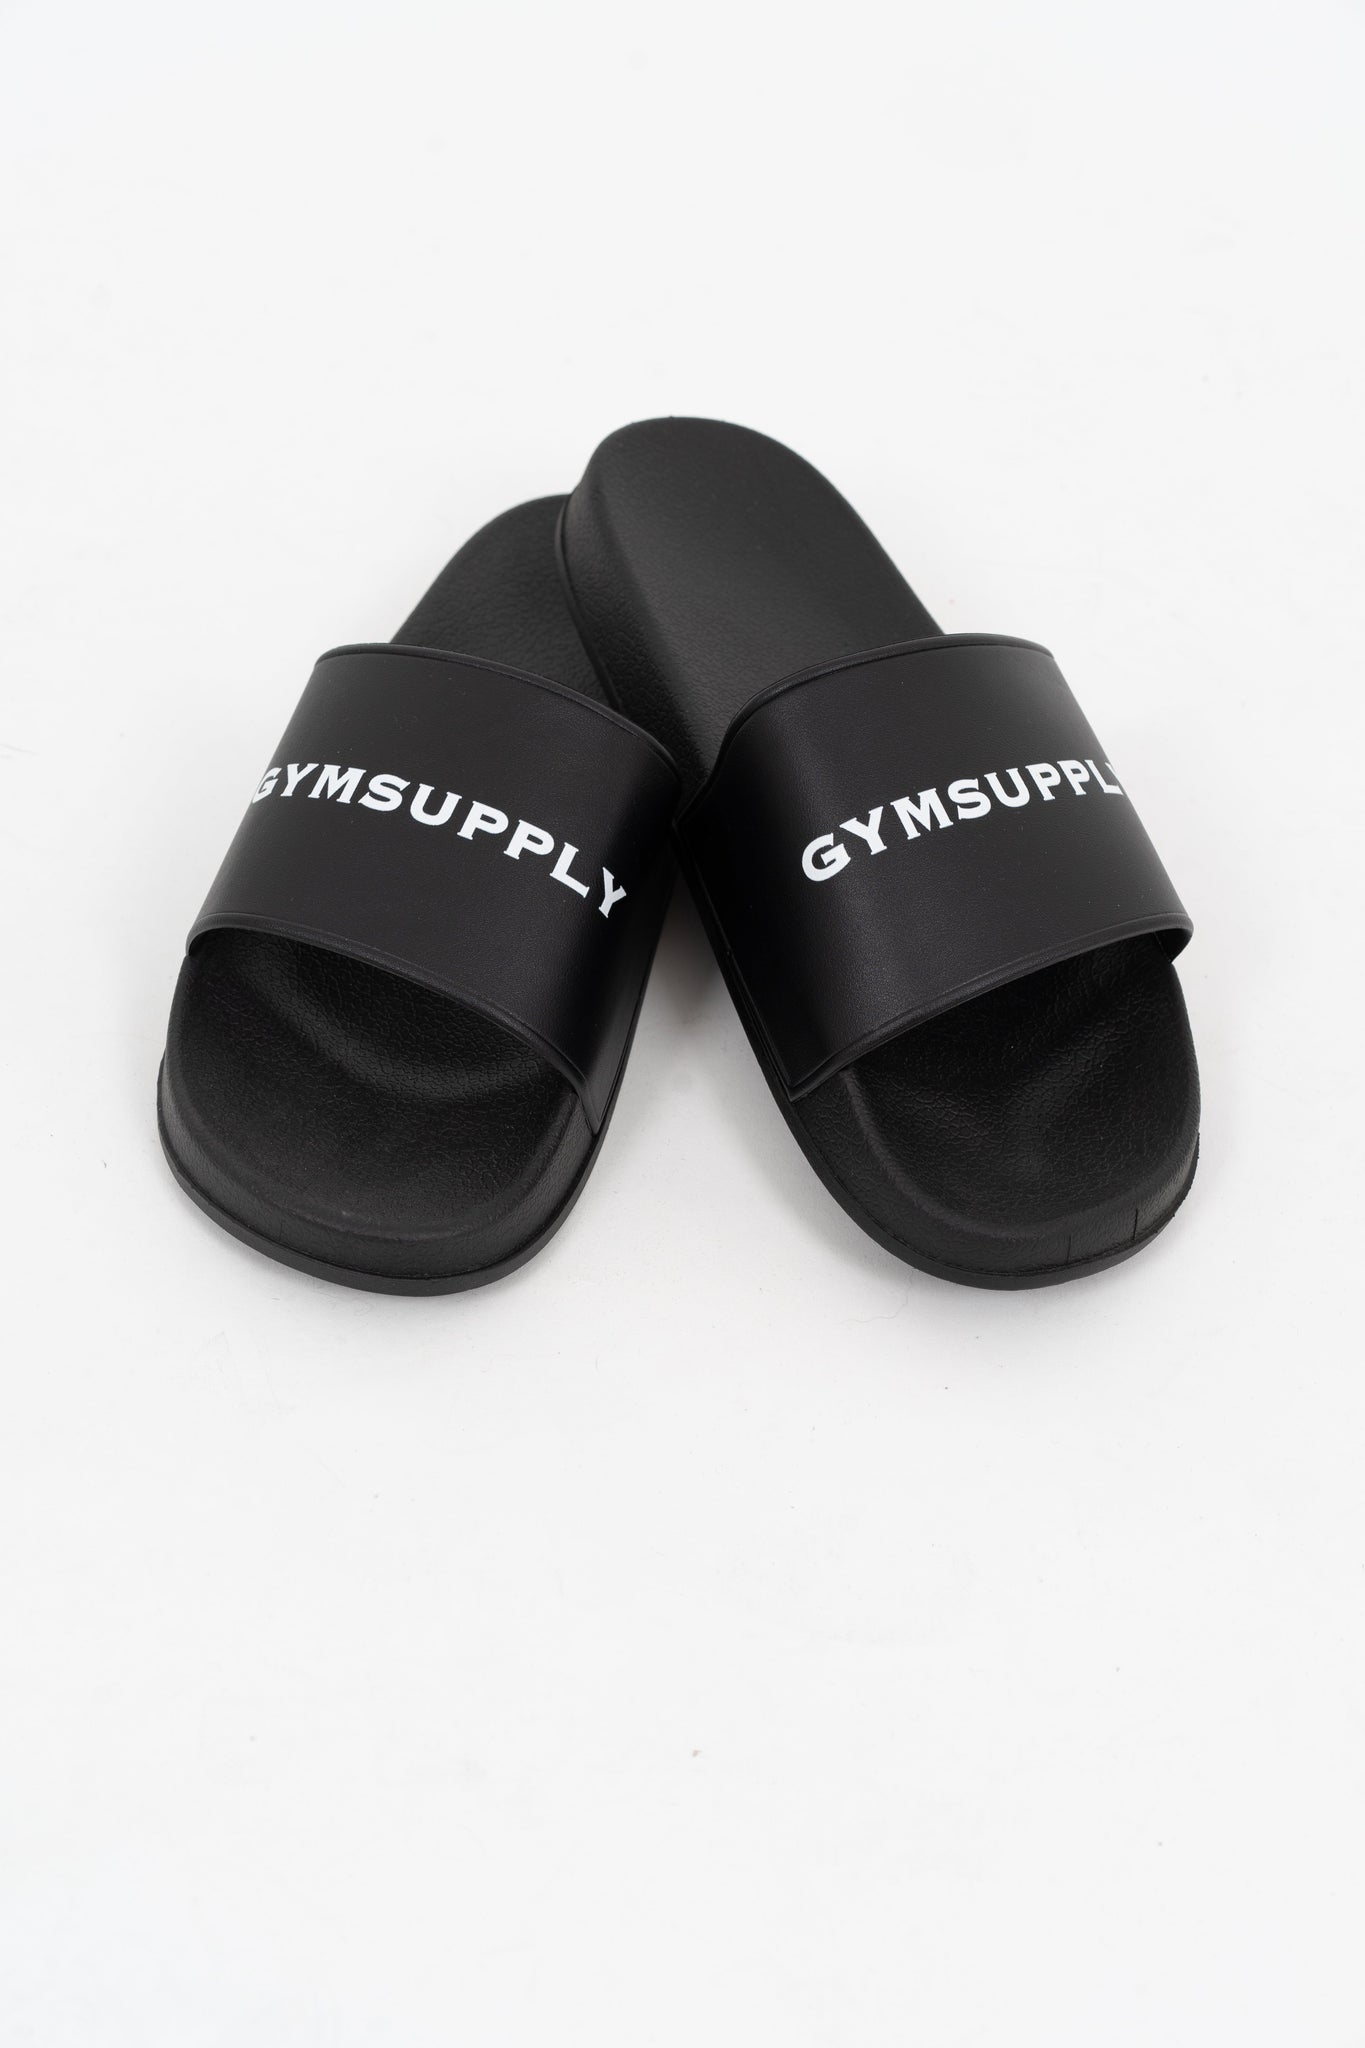 Gymsupply Slides - Gymsupply